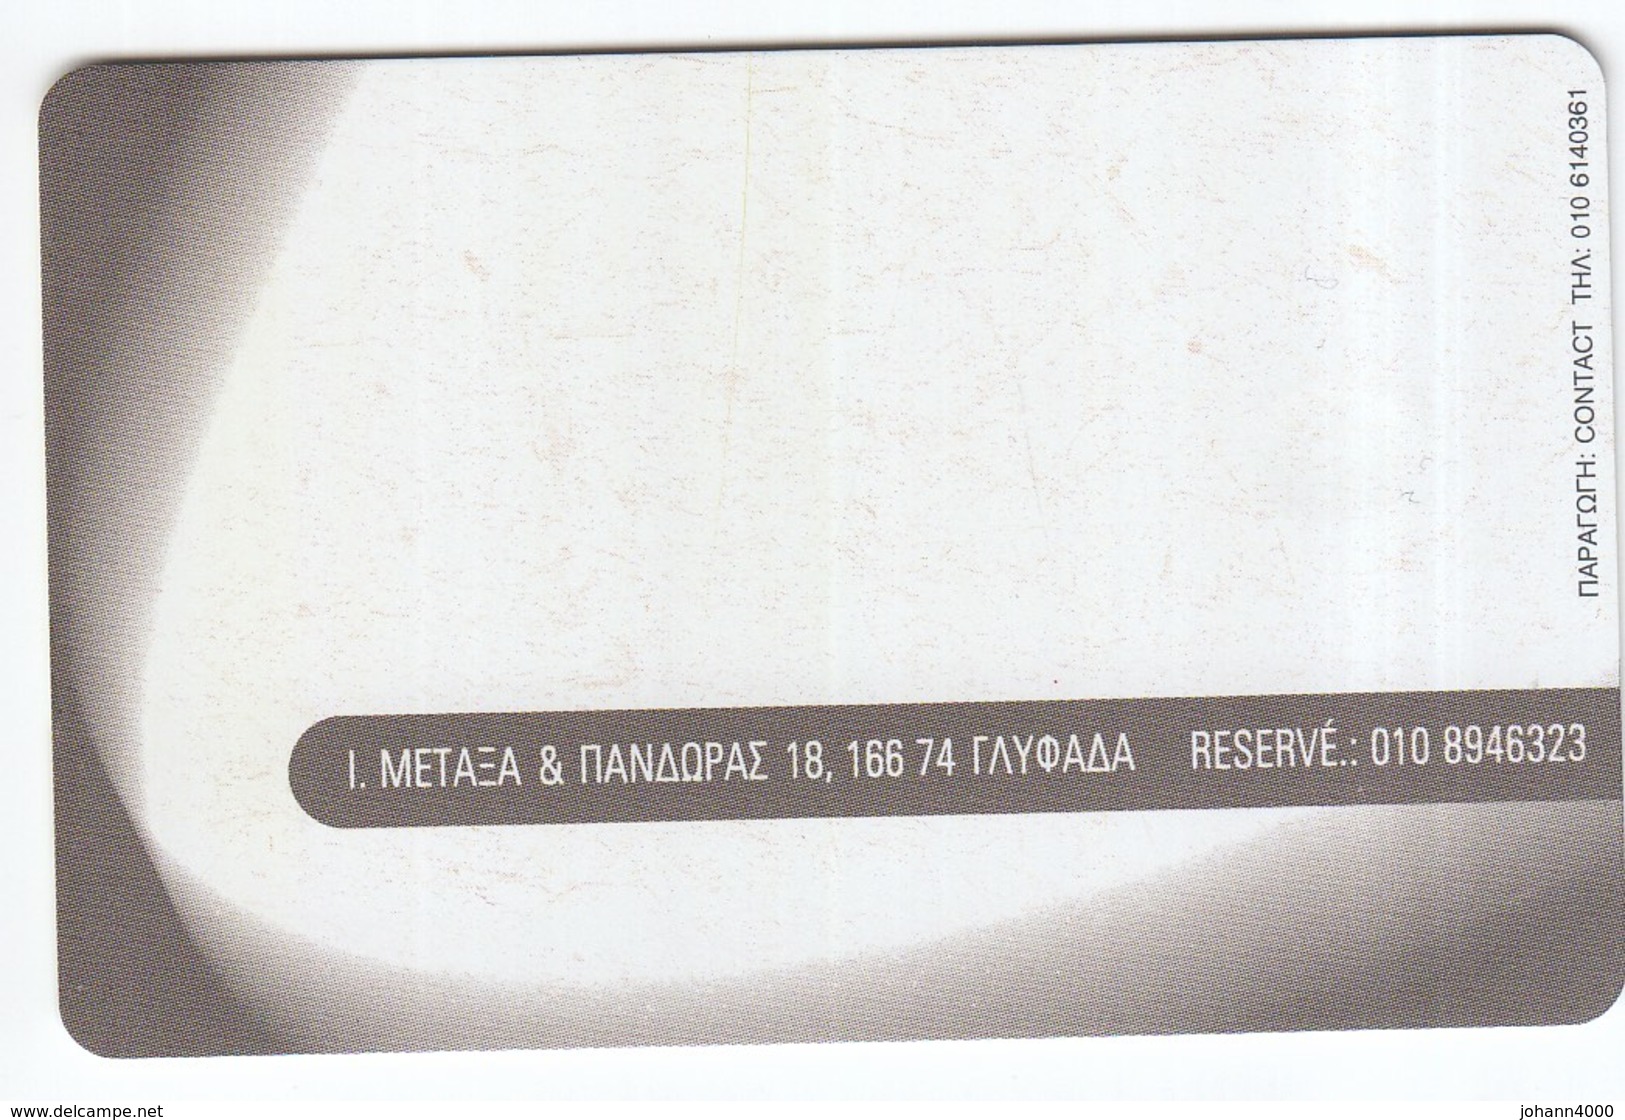 Telefonkarte Griechenland  Chip OTE   Nr. 1548   1242    Aufl. 45.000 St. Geb. - Griechenland